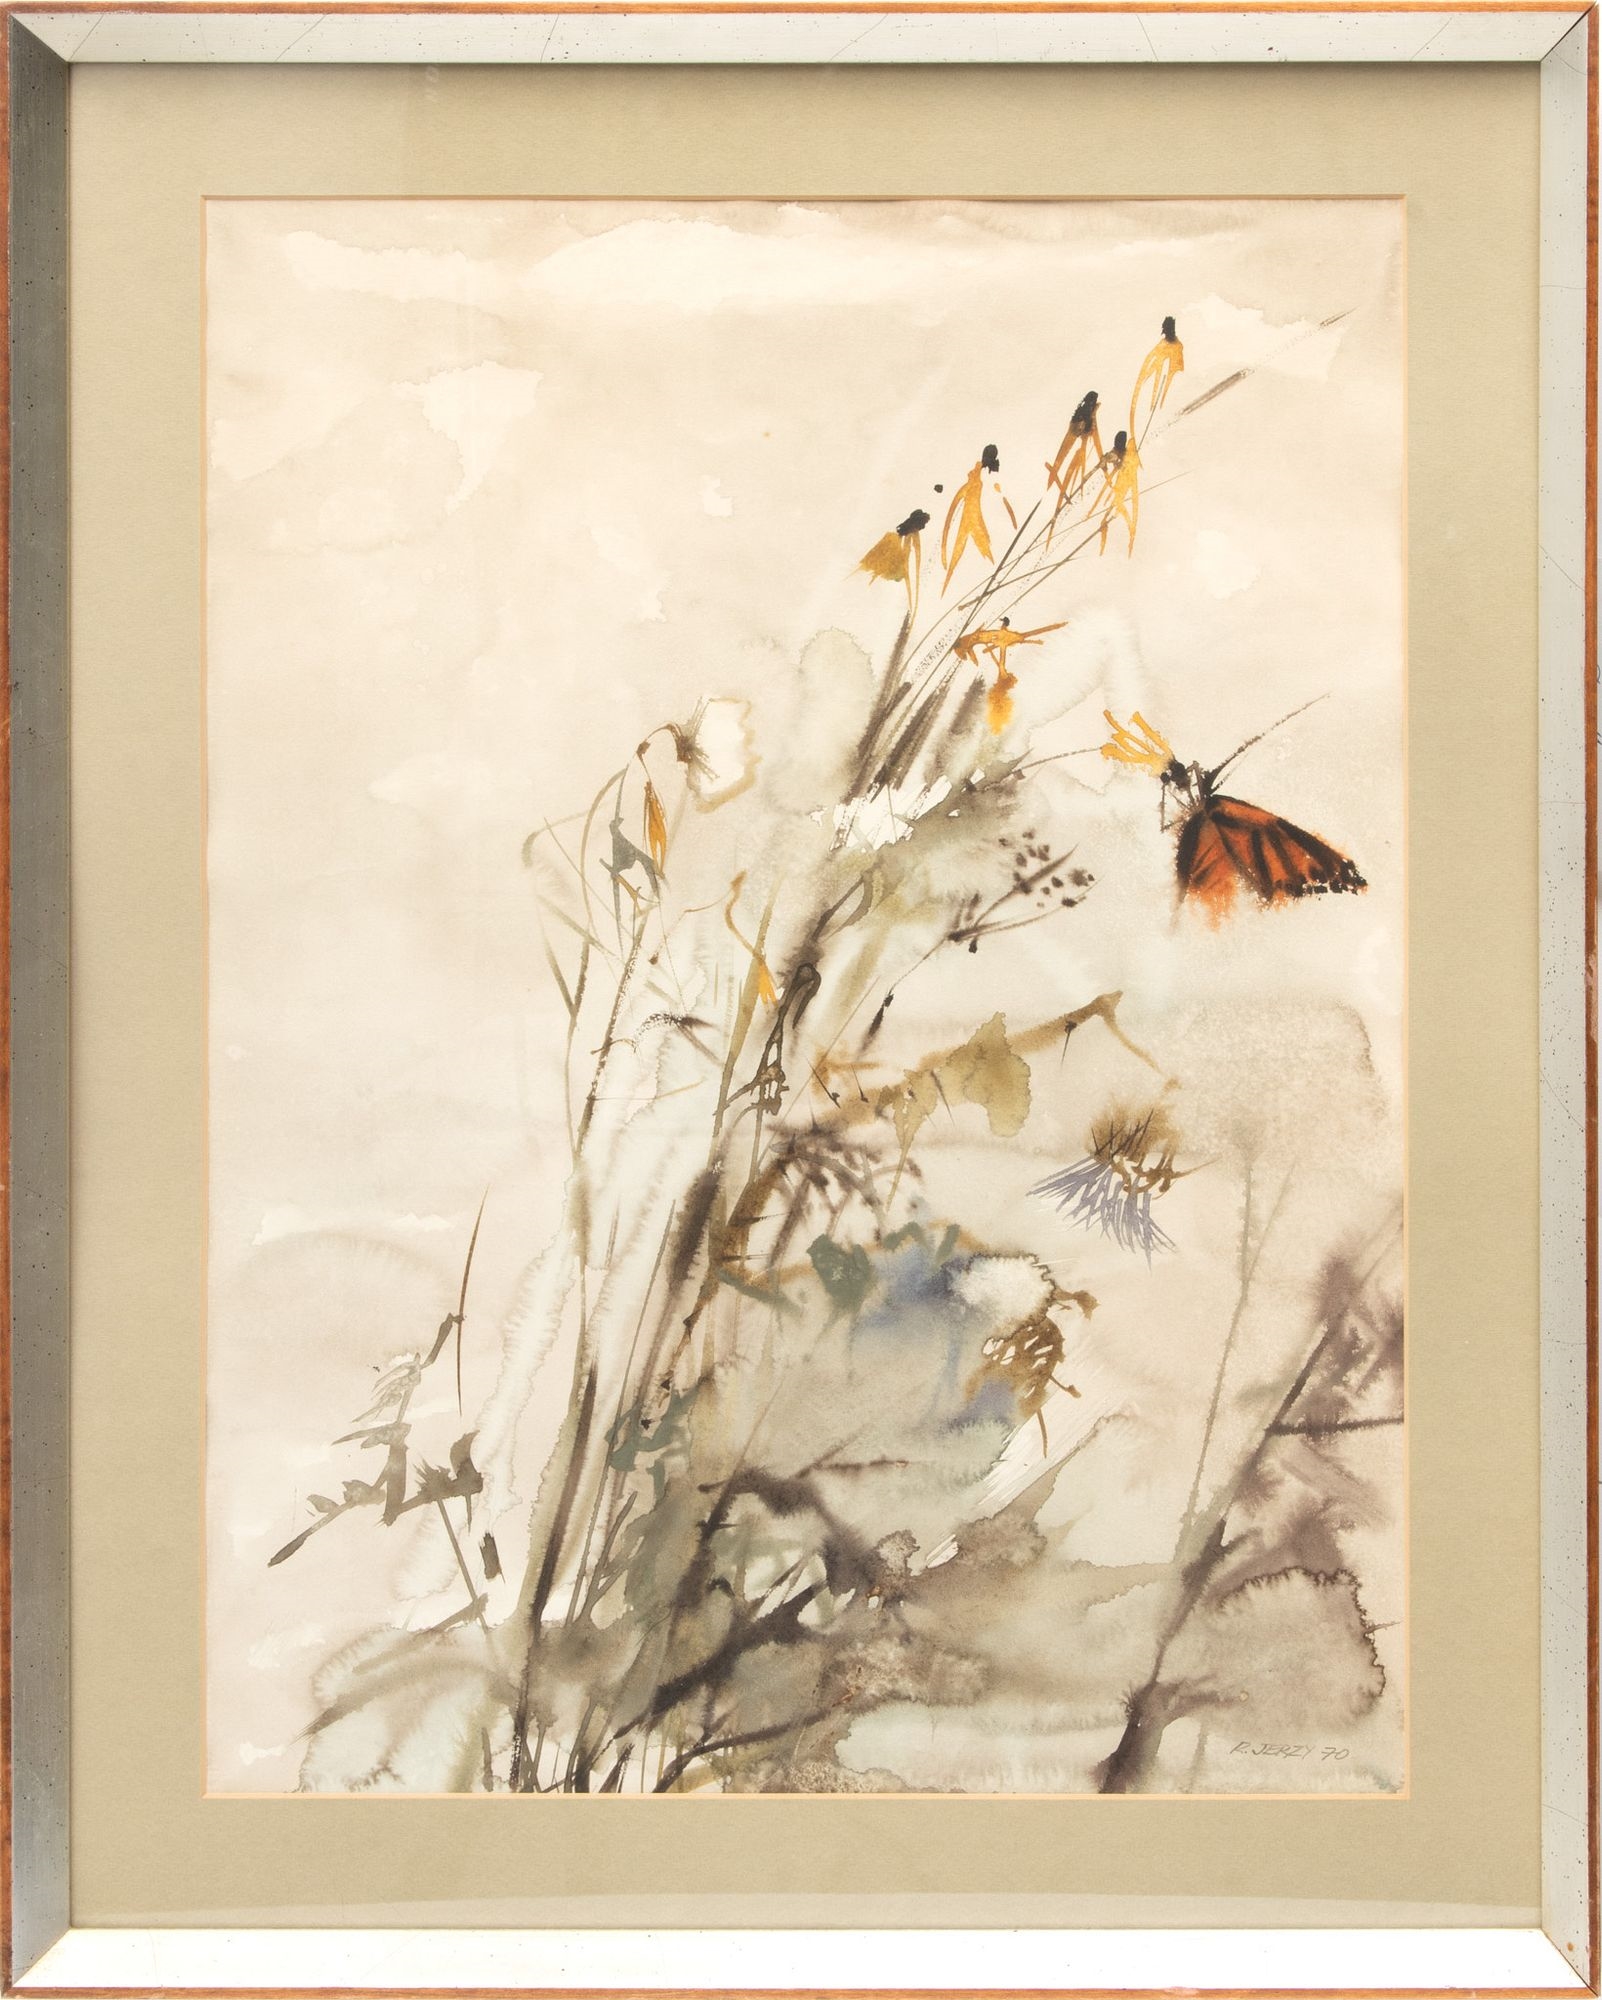 Richard Jerzy (American, 1943-2001) Watercolor on Paper, 1970, "Monarch Butterfly", H 24" W 18 by Richard Jerzy, 1970